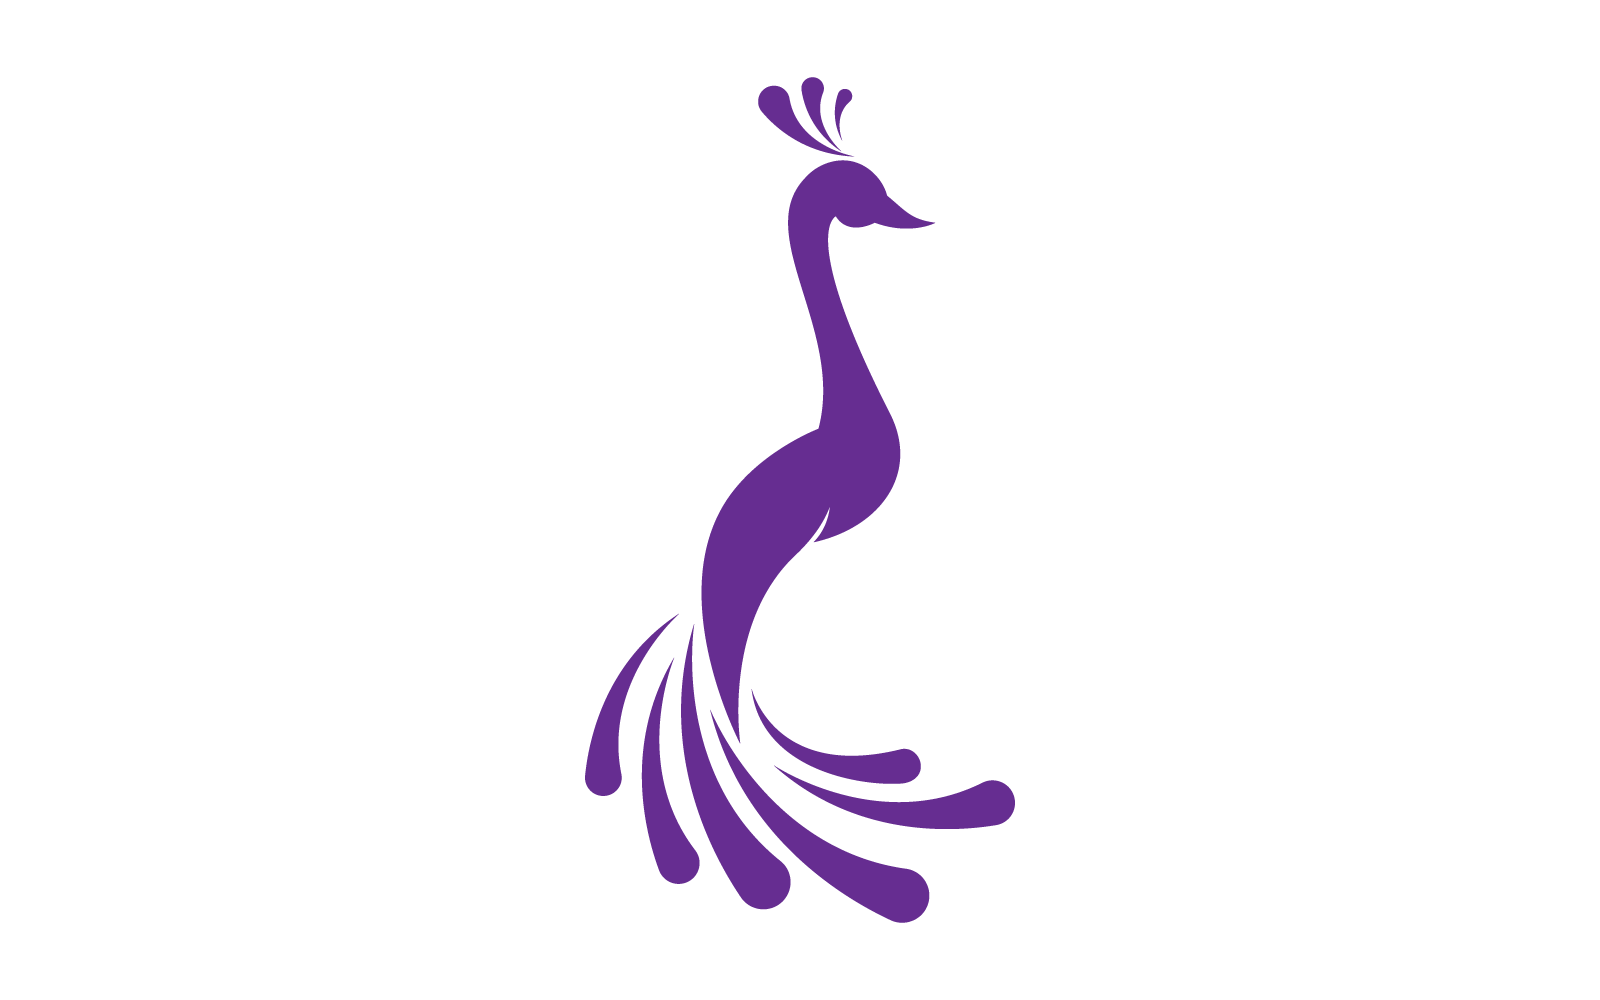 Peacock logo vector flat design template